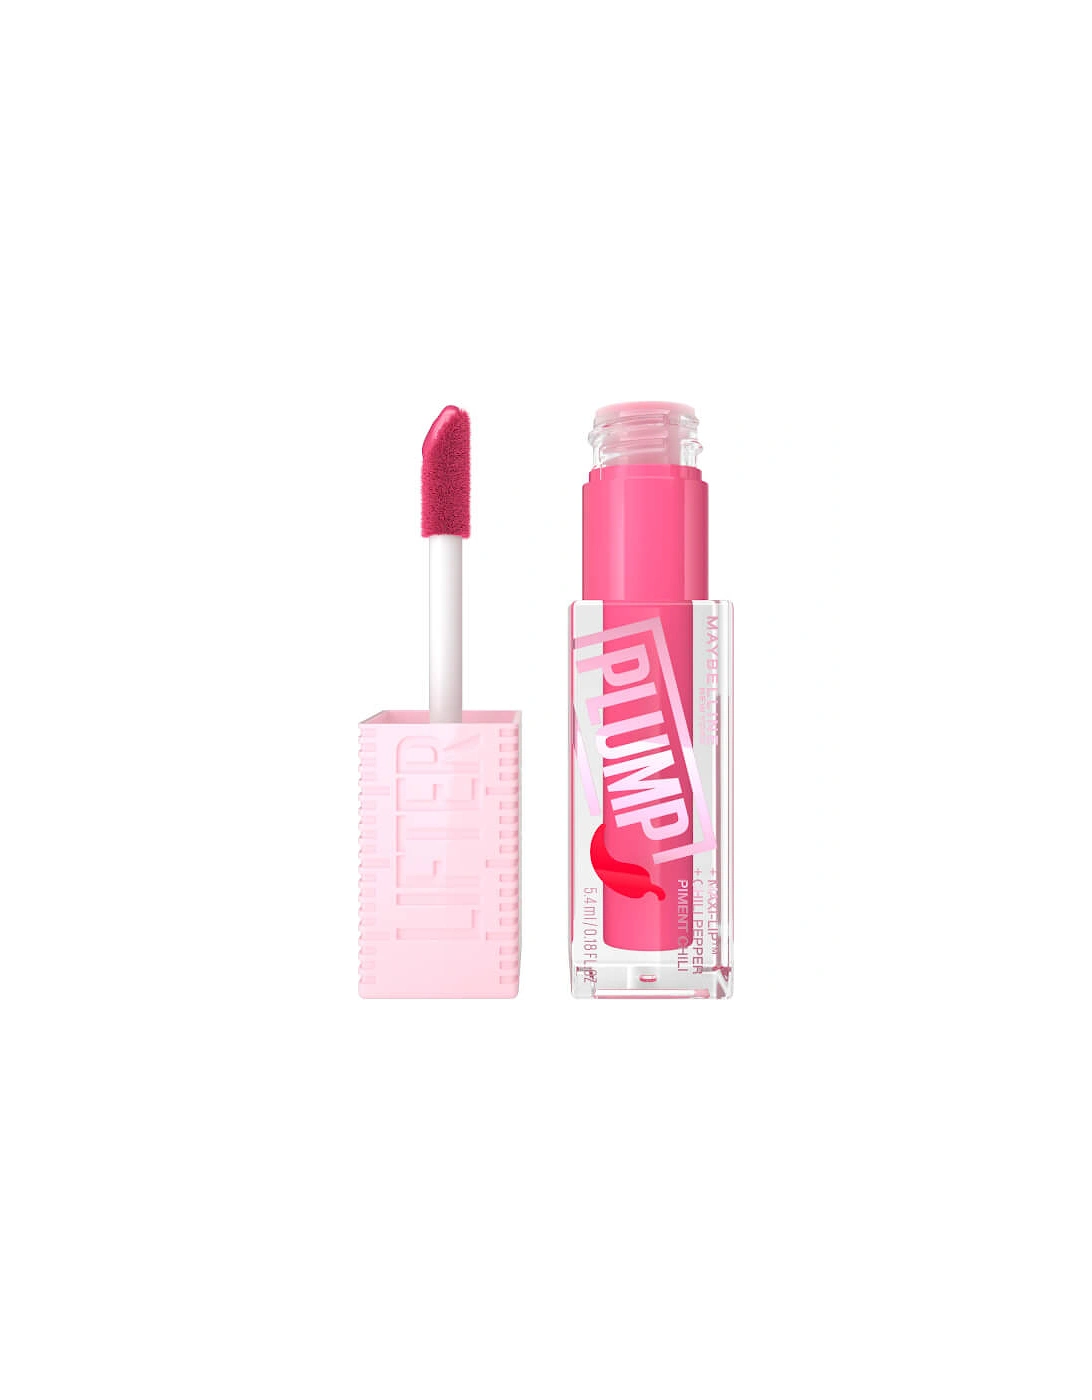 Lifter Gloss Plumping Lip Gloss - Pink Sting, 2 of 1